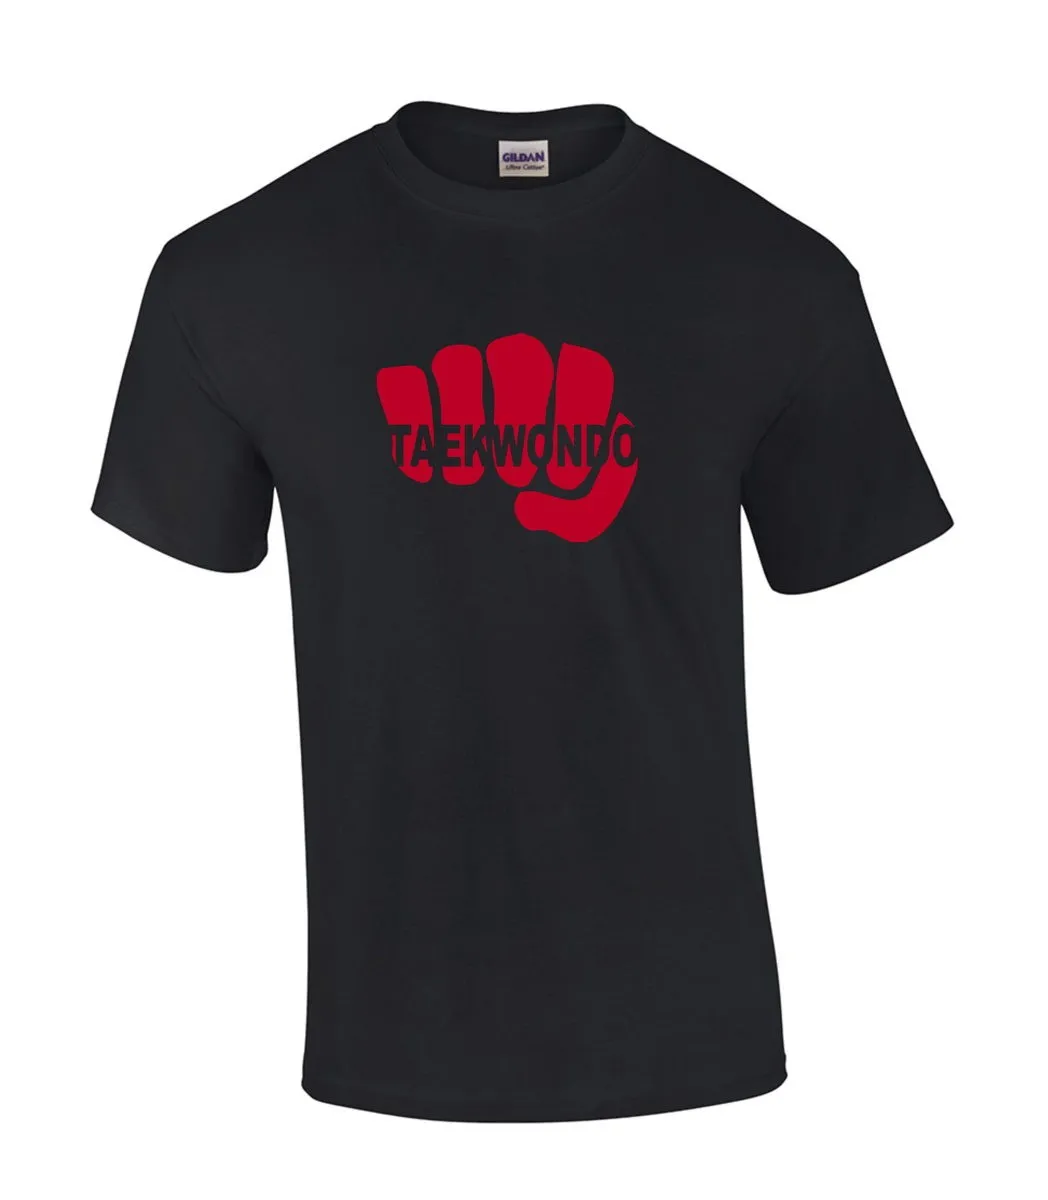 T-shirt Vuist Taekwondo zwart